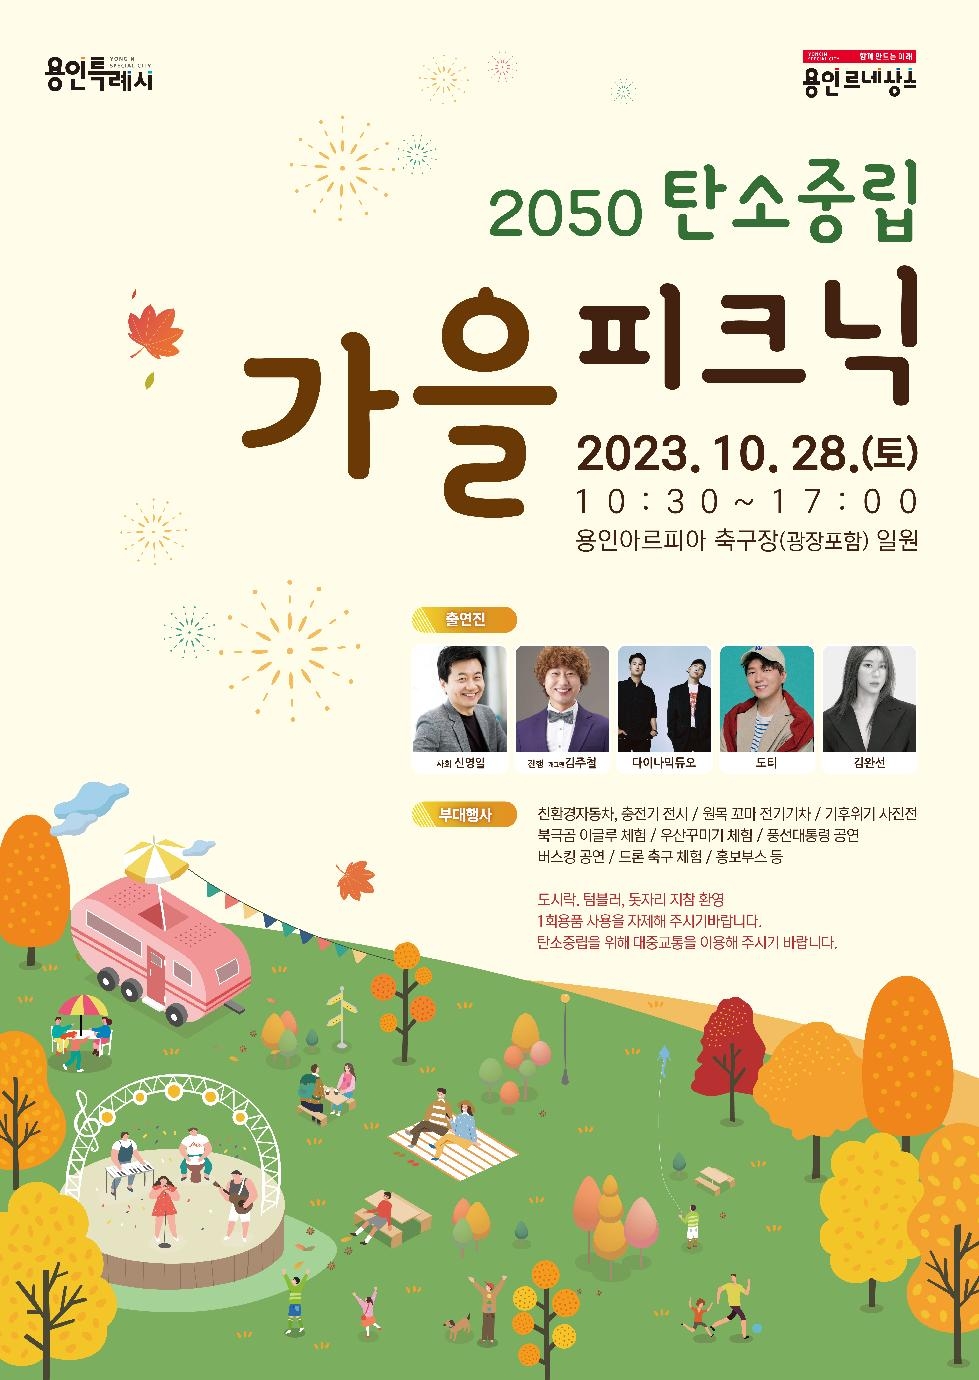 용인시 28일 ‘2050 탄소중립 가을 피크닉’ 행사 개최